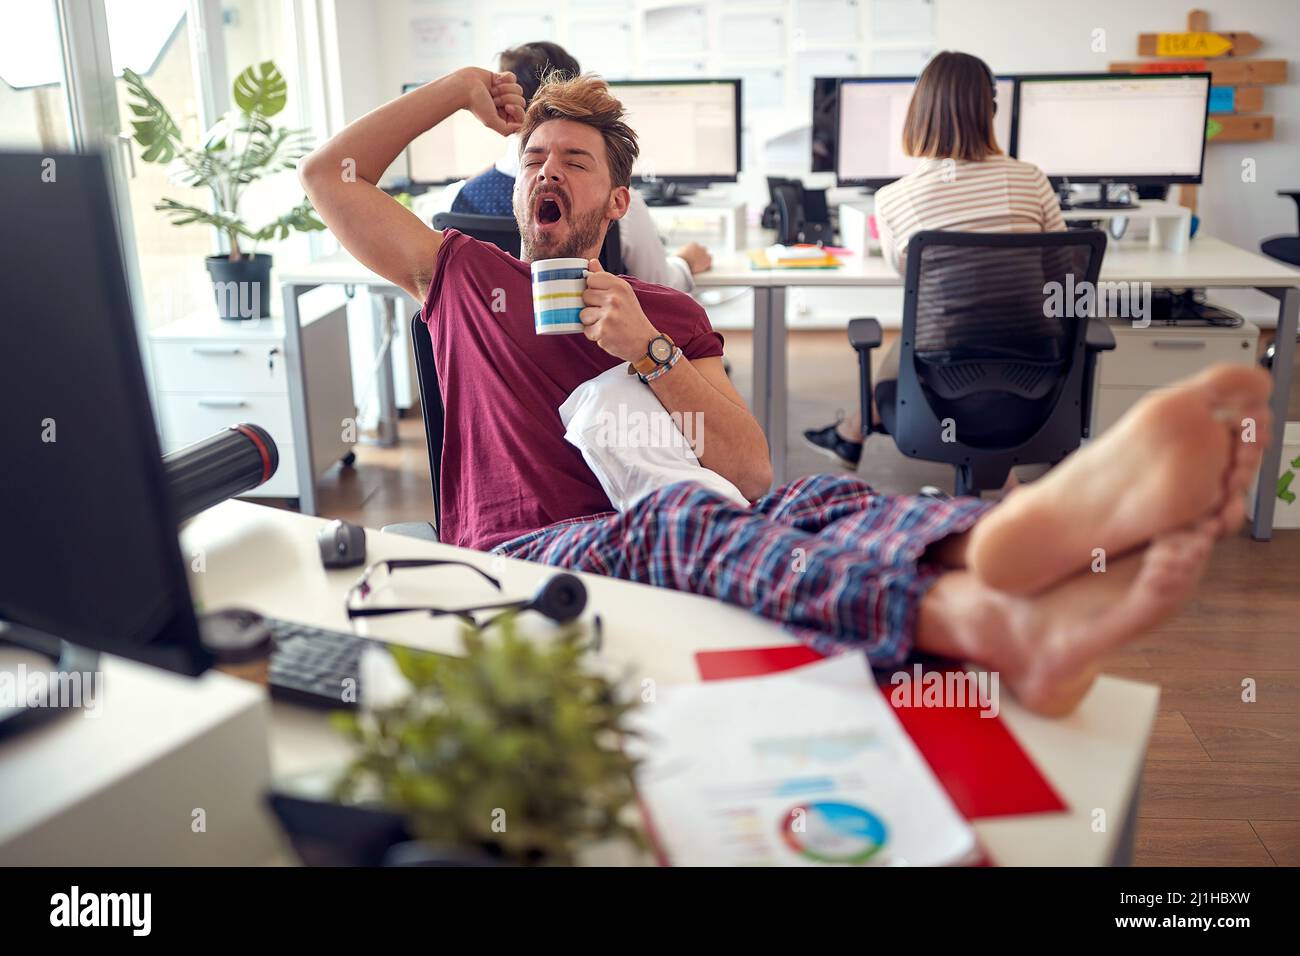 Un jeune employé de sexe masculin tente de rester éveillé tout en travaillant dans une atmosphère monotone au bureau. Employés, travail, bureau Banque D'Images